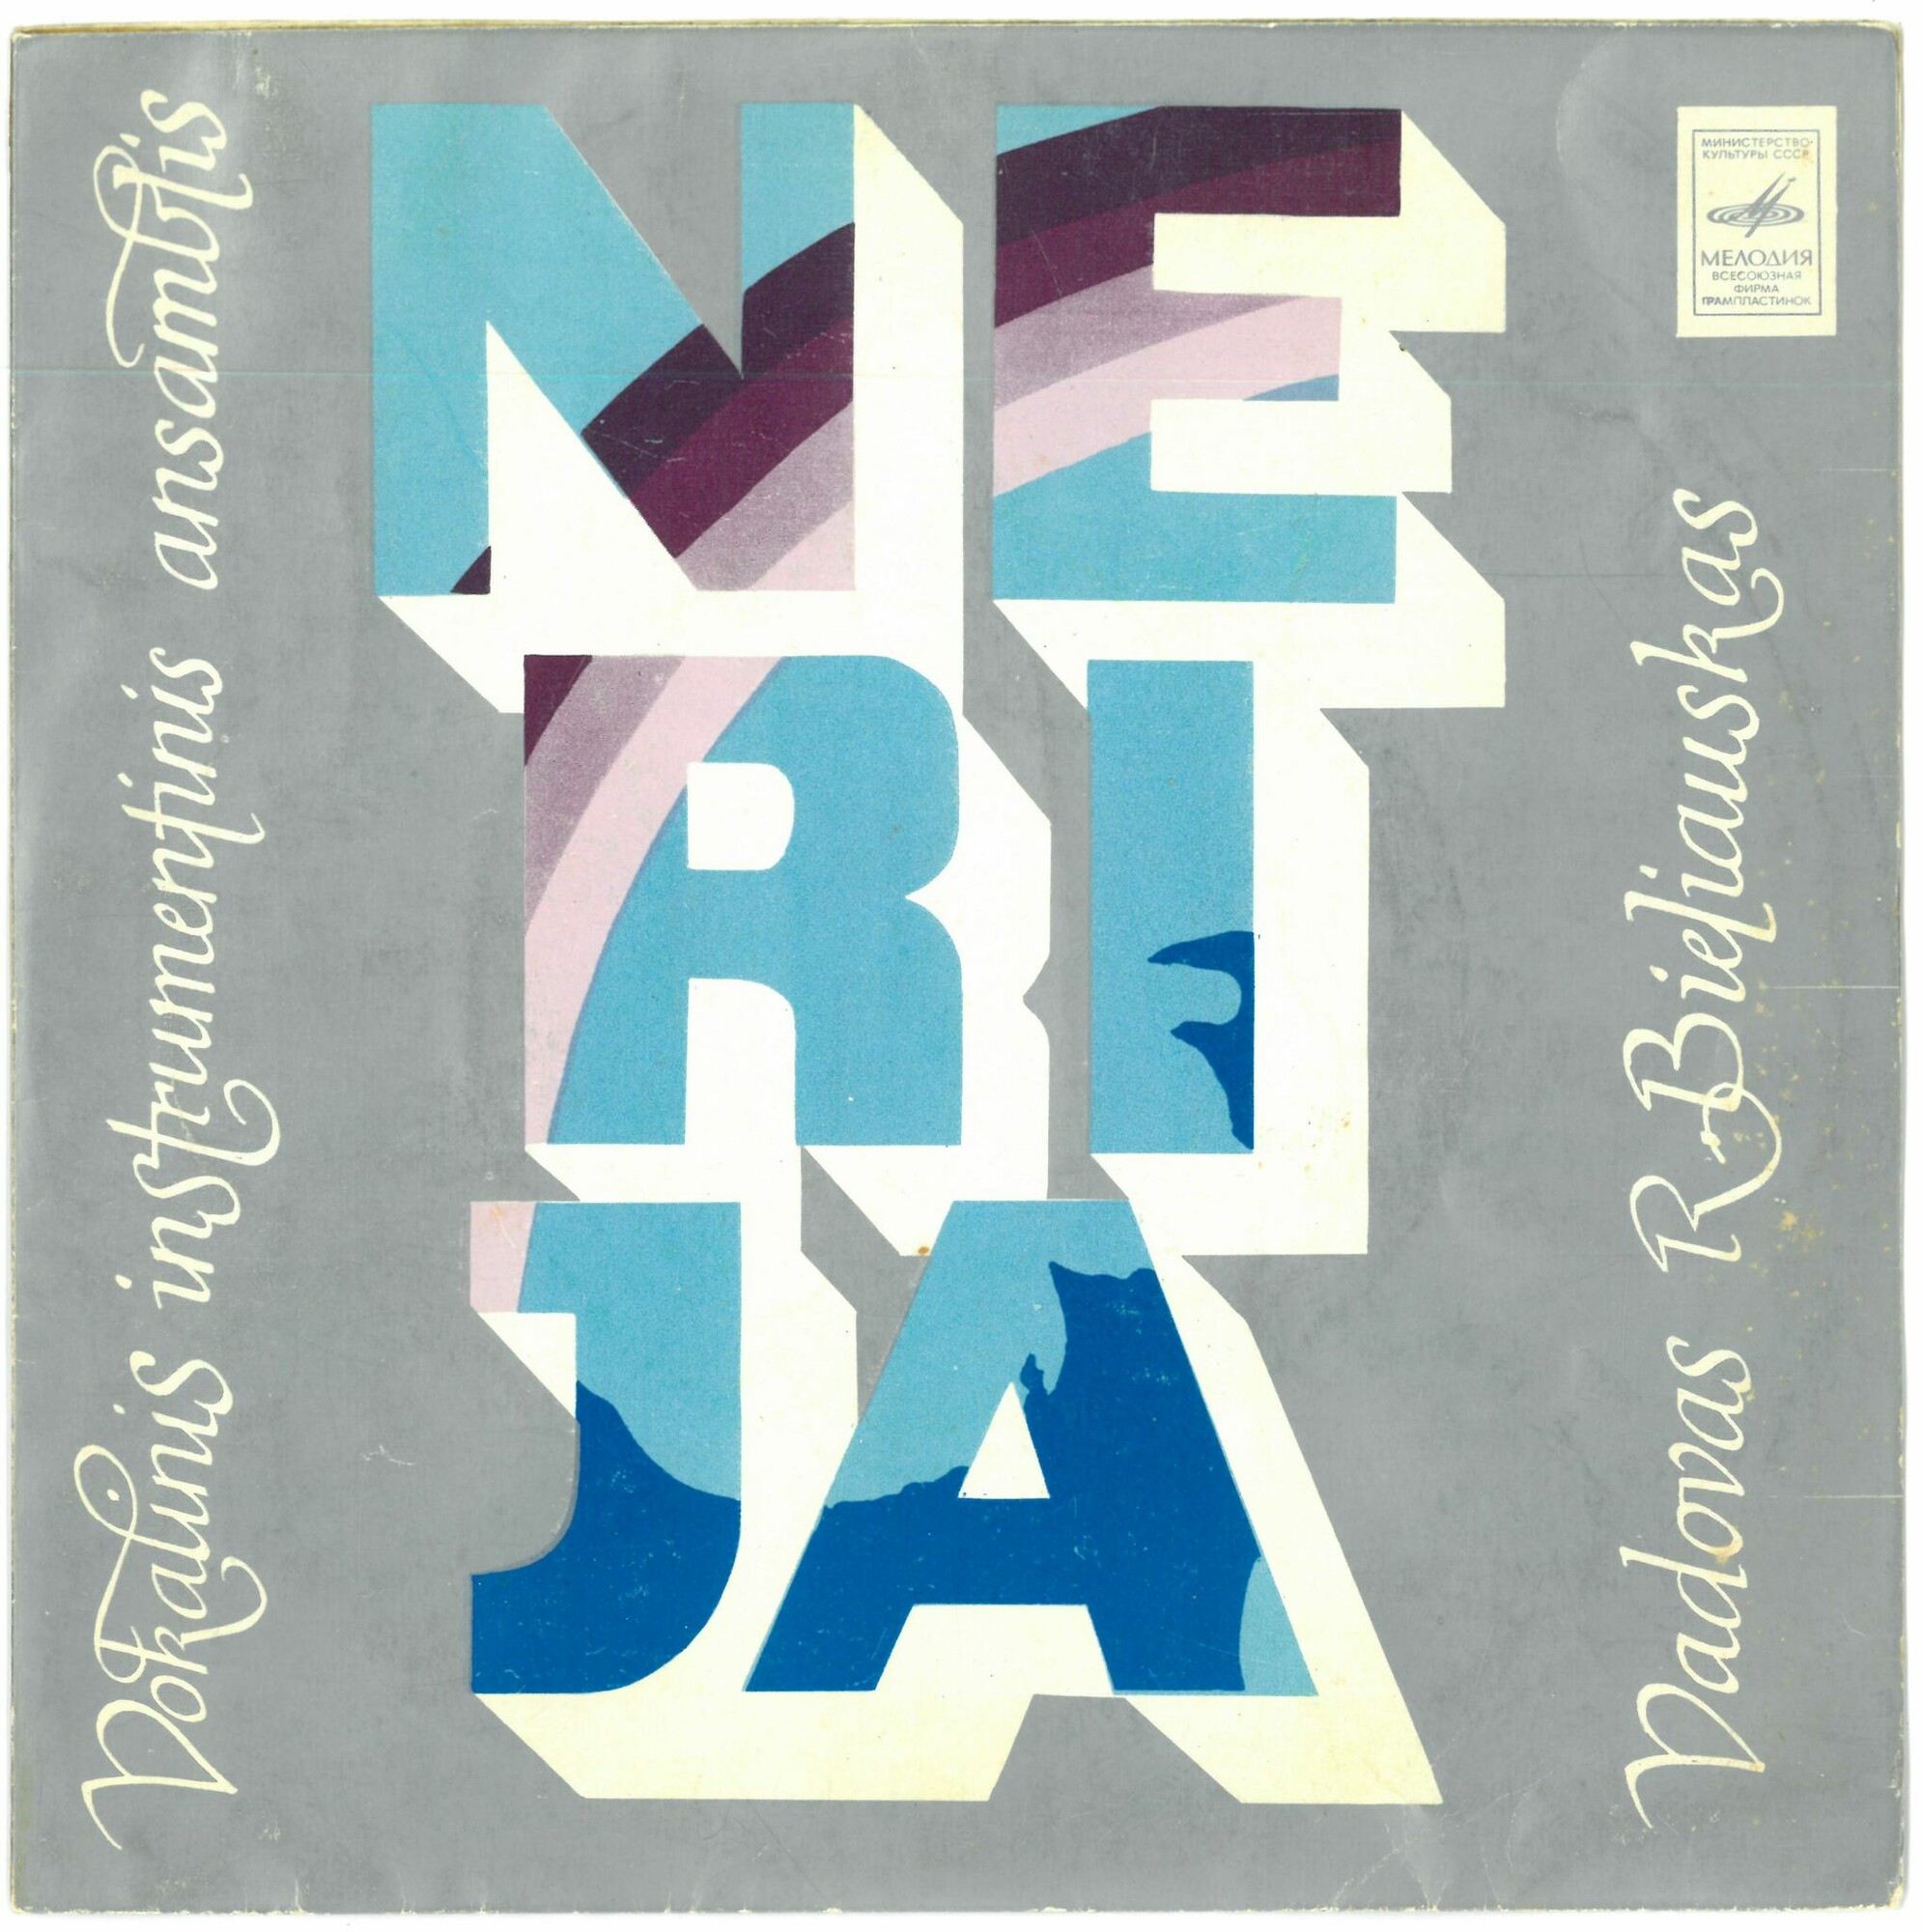 ВИА "Нерия" (Nerija)